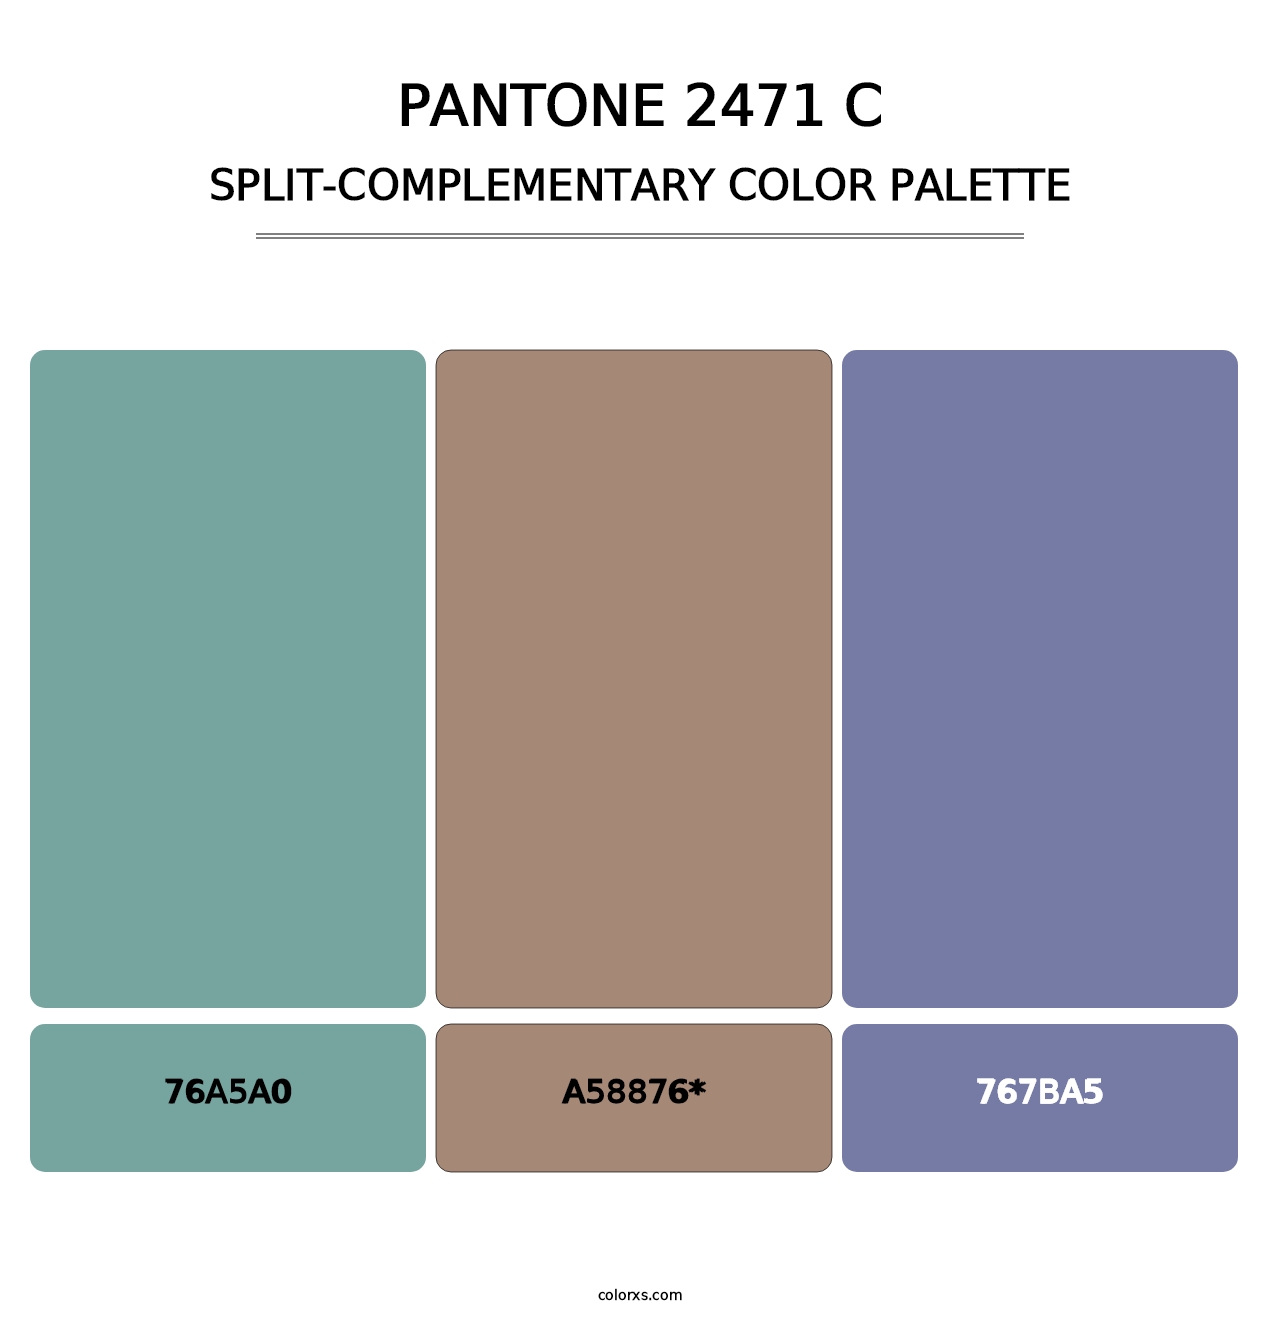 PANTONE 2471 C - Split-Complementary Color Palette